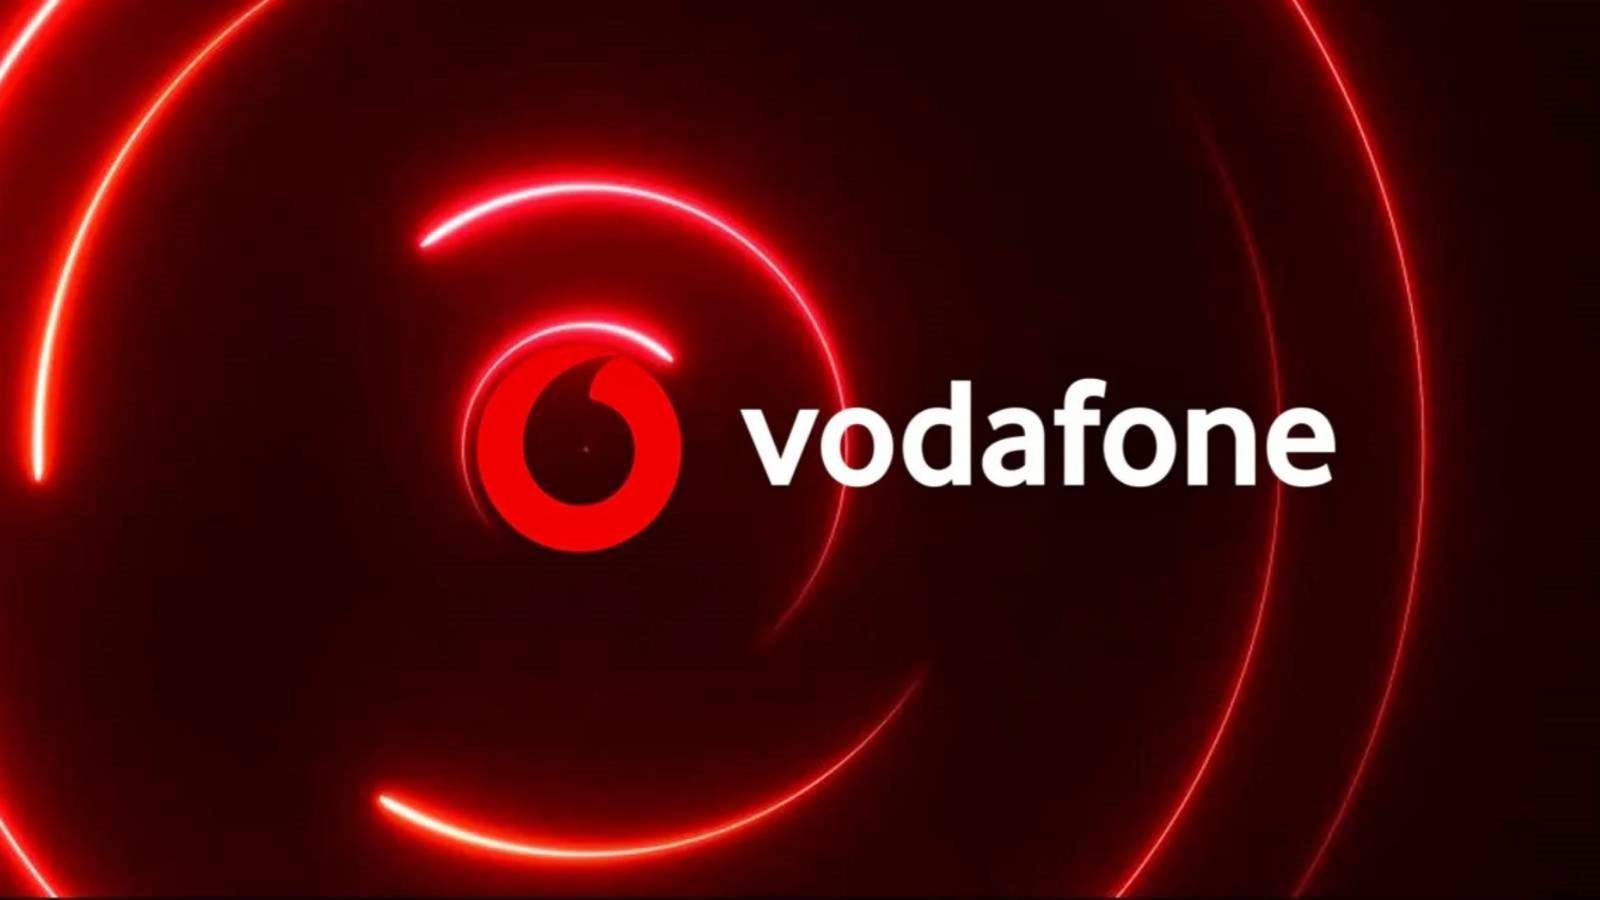 Vodafone VIKTIGT beslut meddelat till rumänska kunder